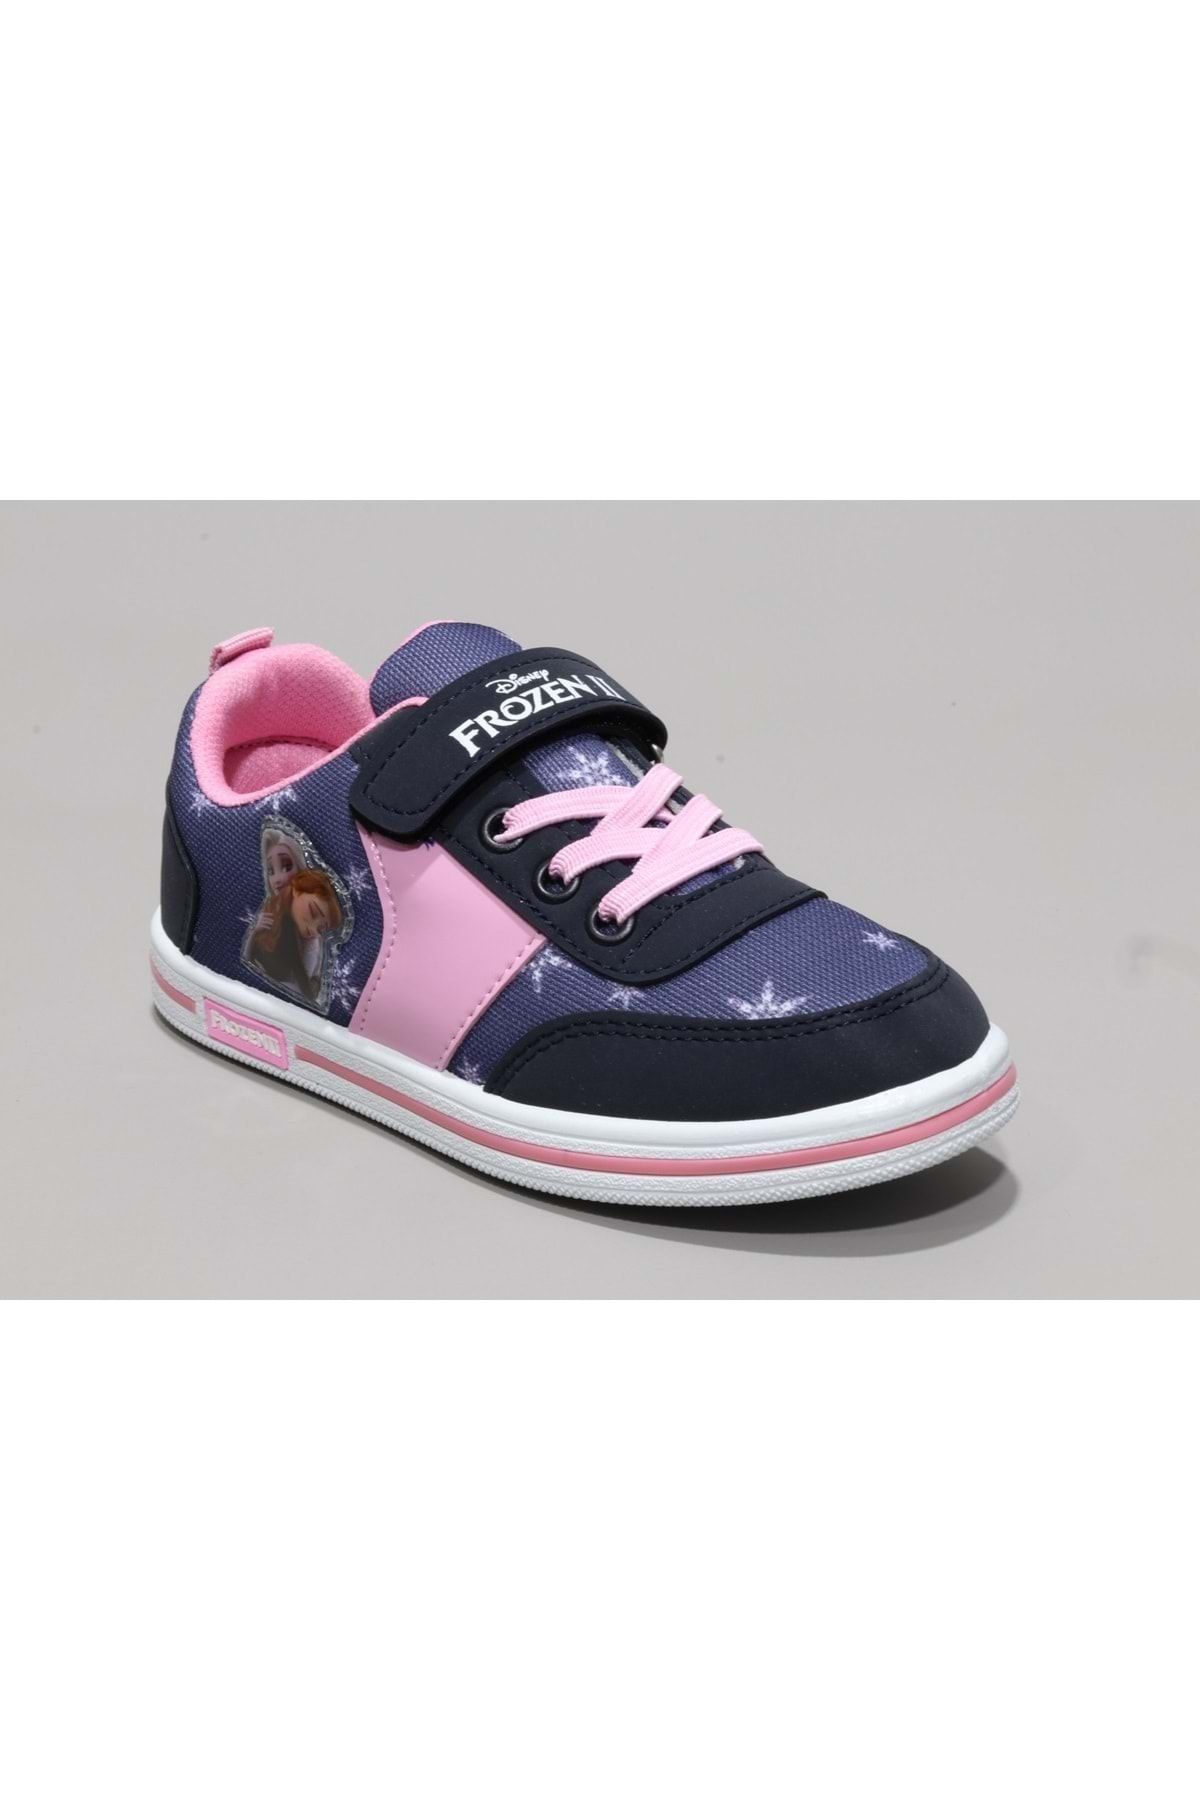 Frozen Kız Çocuk Sneakers Ayakkabı - Lacivert - 31